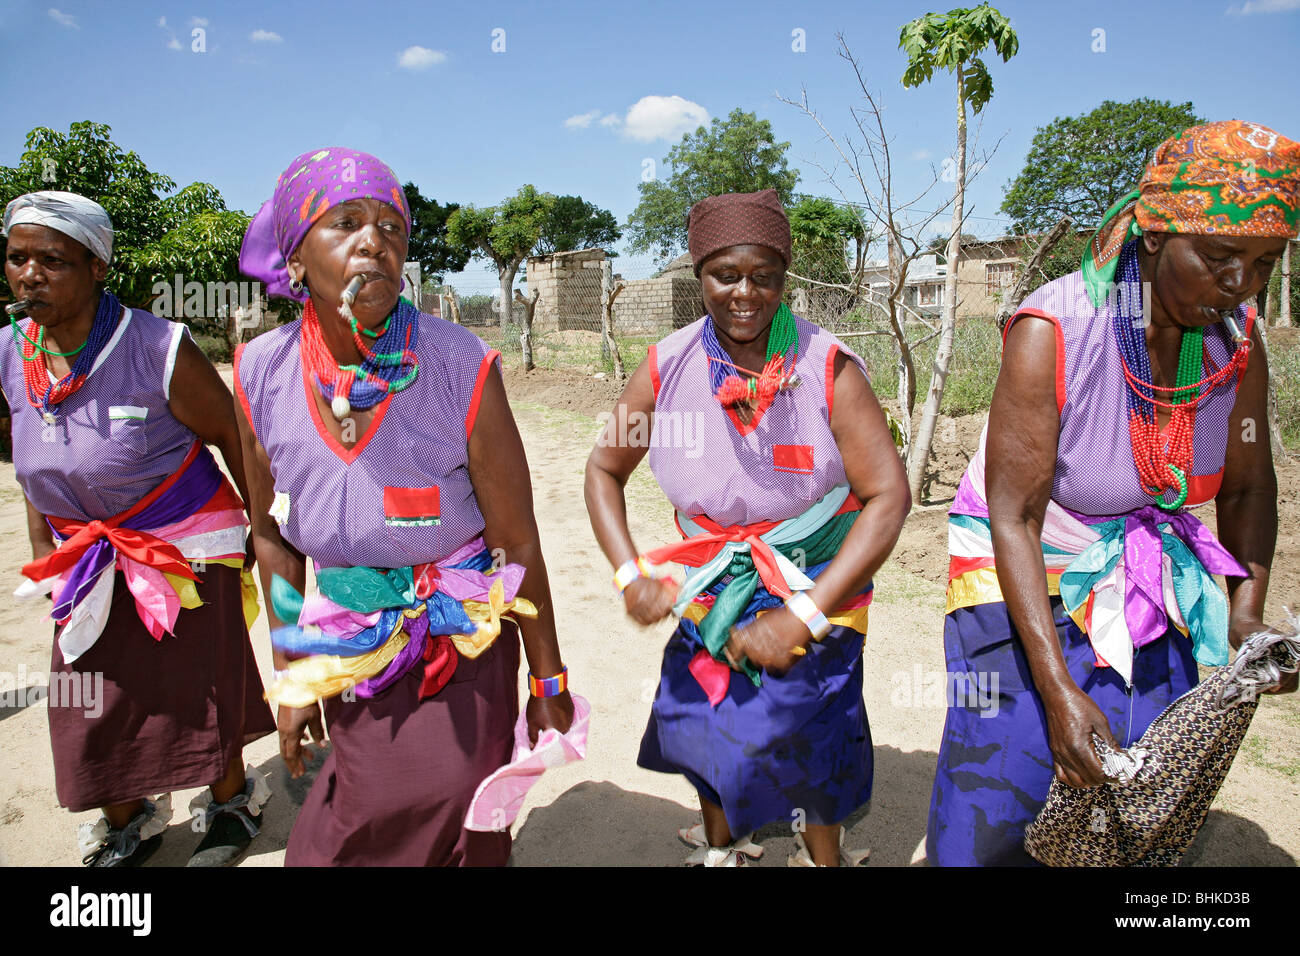 Les femmes d'Afrique du Sud la danse de bright colorful costume traditionnel dans un village africain. Banque D'Images